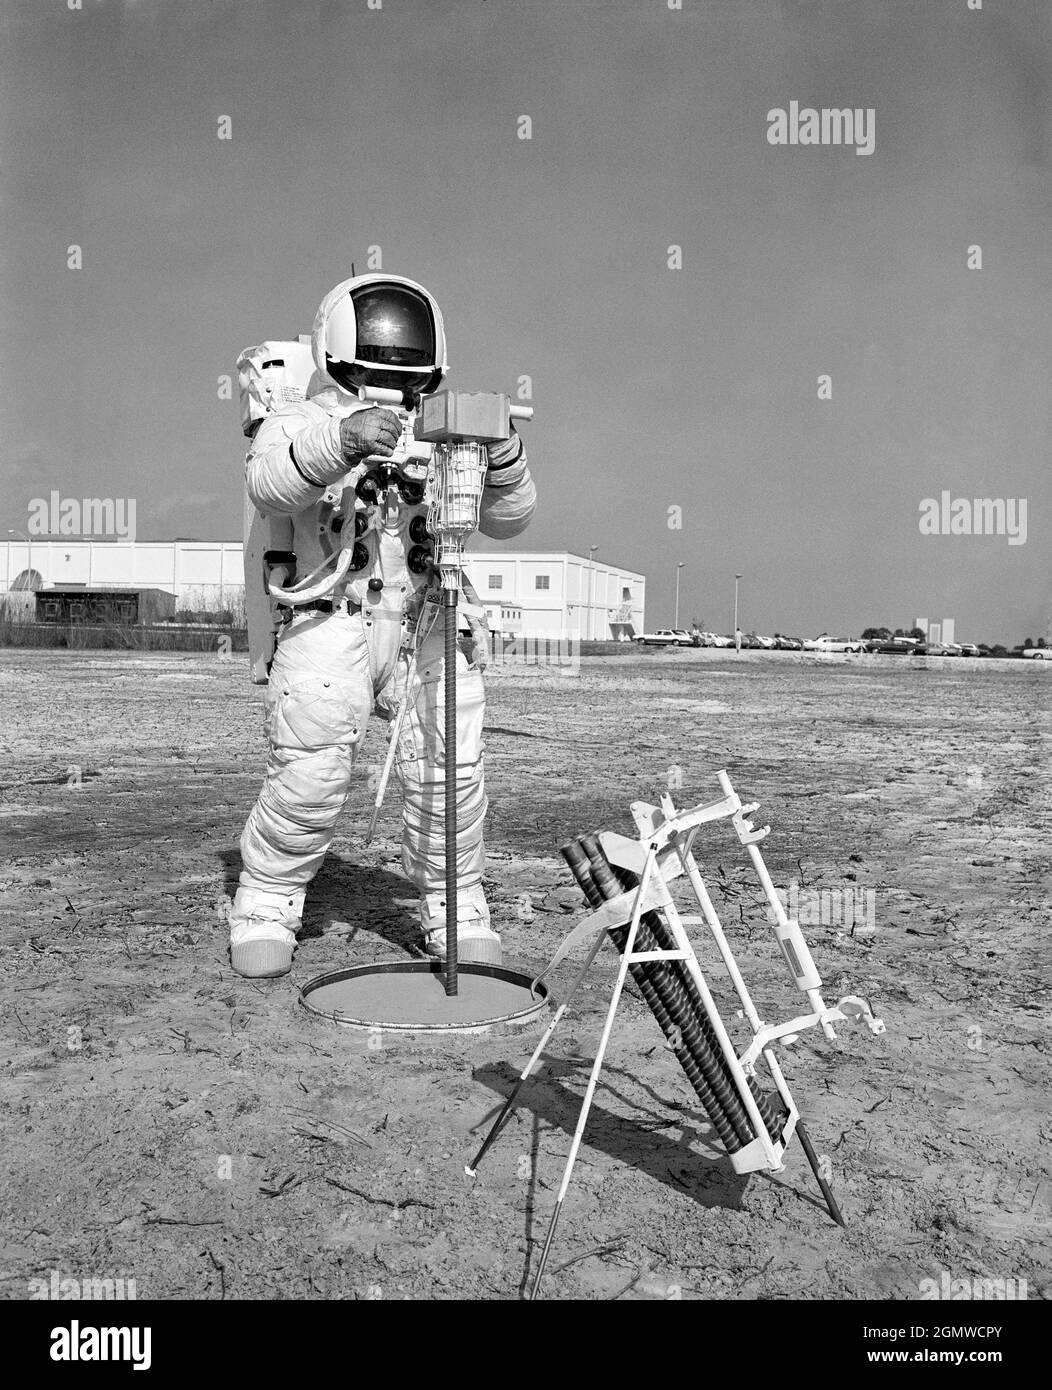 (28 gennaio 1970) ---- Astronauta Fred W. Haise Jr., pilota a modulo lunare della missione di atterraggio lunare Apollo 13, partecipa a una passeggiata attraverso la linea temporale dell'attività extraveicolare al Centro spaziale Kennedy. In questo caso, Haise utilizza una perforatrice di superficie Apollo Lunar per scavare un foro della sonda del flusso di calore di tre metri. L'esperimento del flusso di calore su Apollo 13 avrà uno strumento elettronico che misurerà il flusso di calore esterno dall'interno della luna. Foto Stock